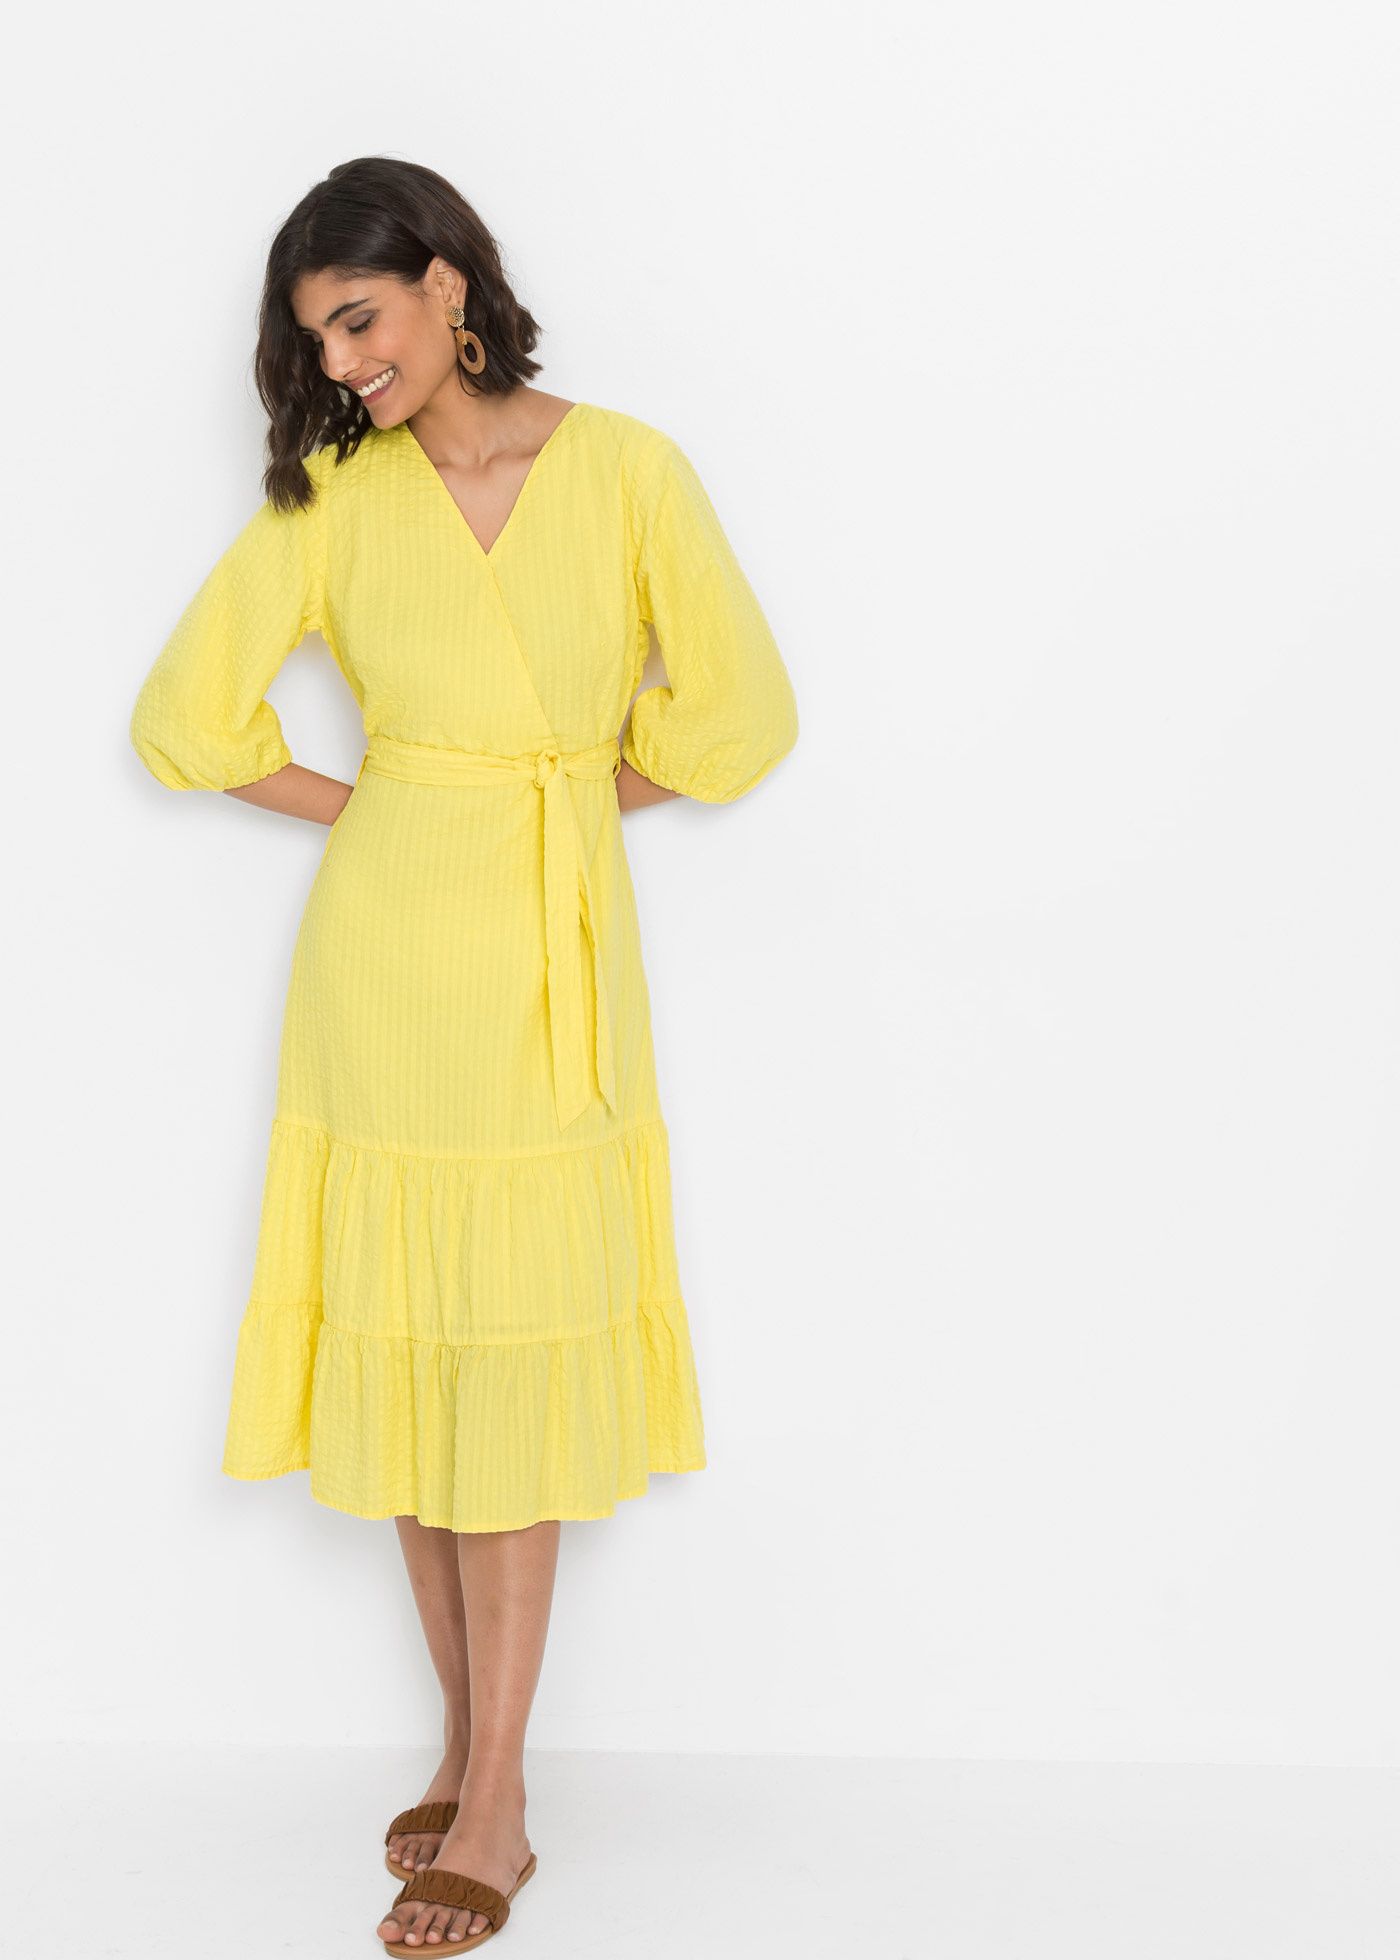 B.P.C sukienka żółta midi r.42